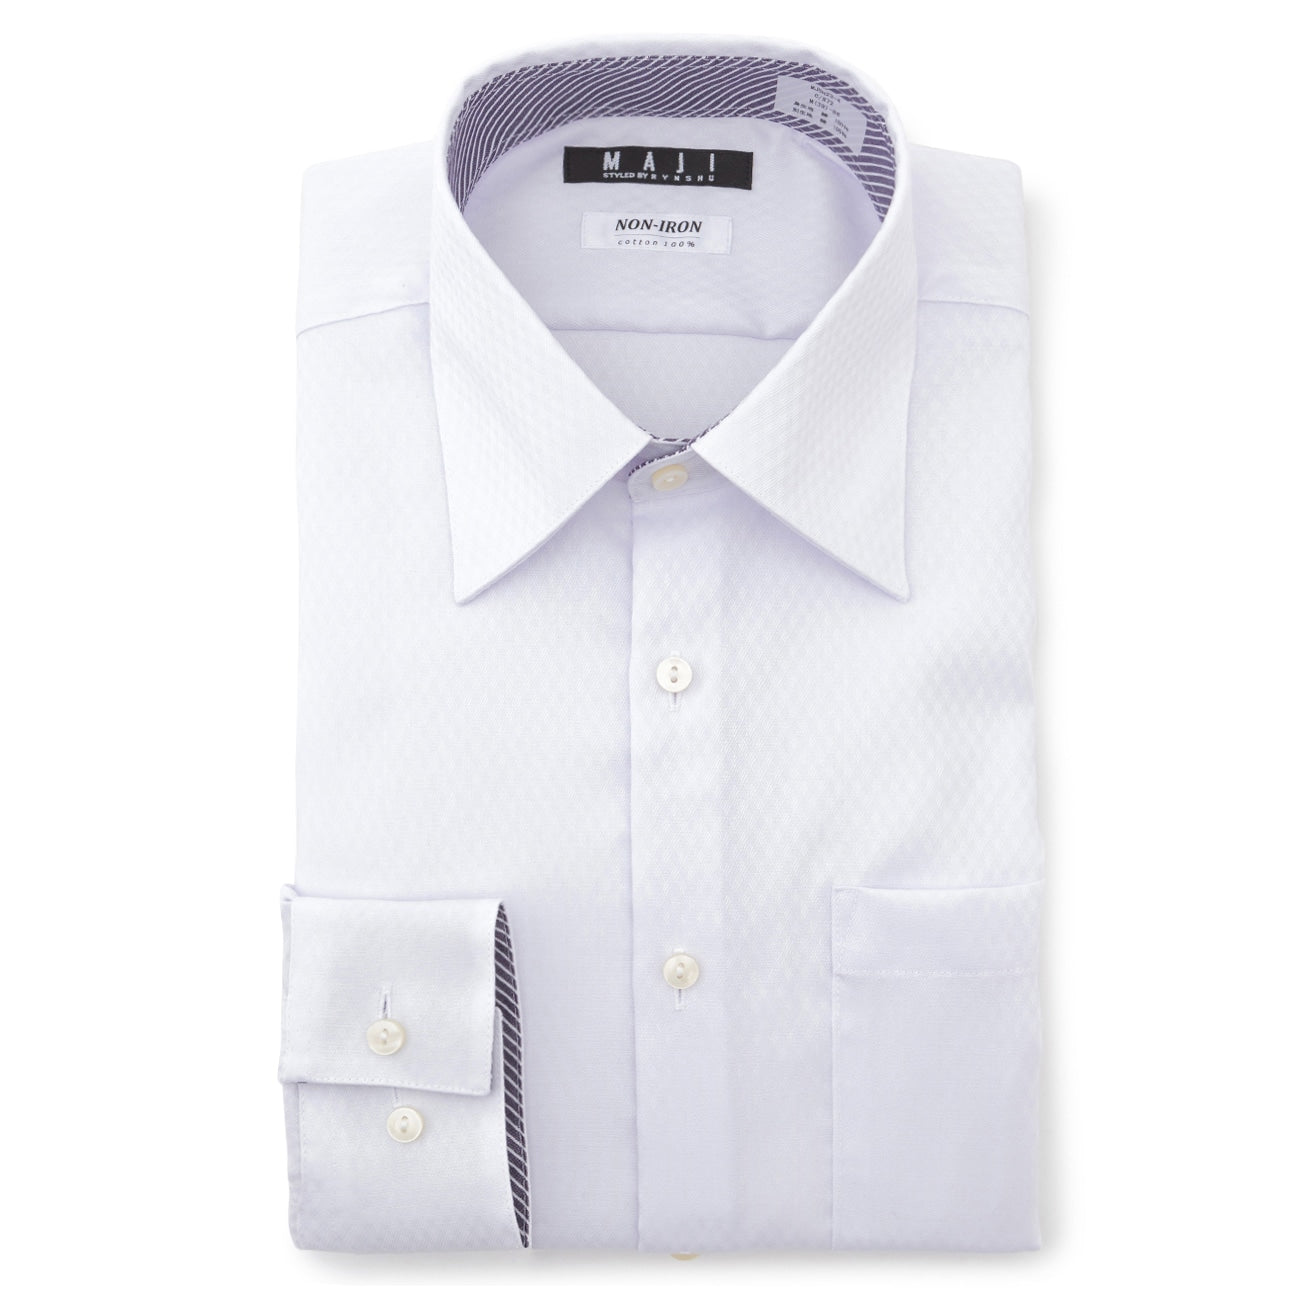 MAJI 免熨烫棉质弹力梭织图案标准领衬衫--修身